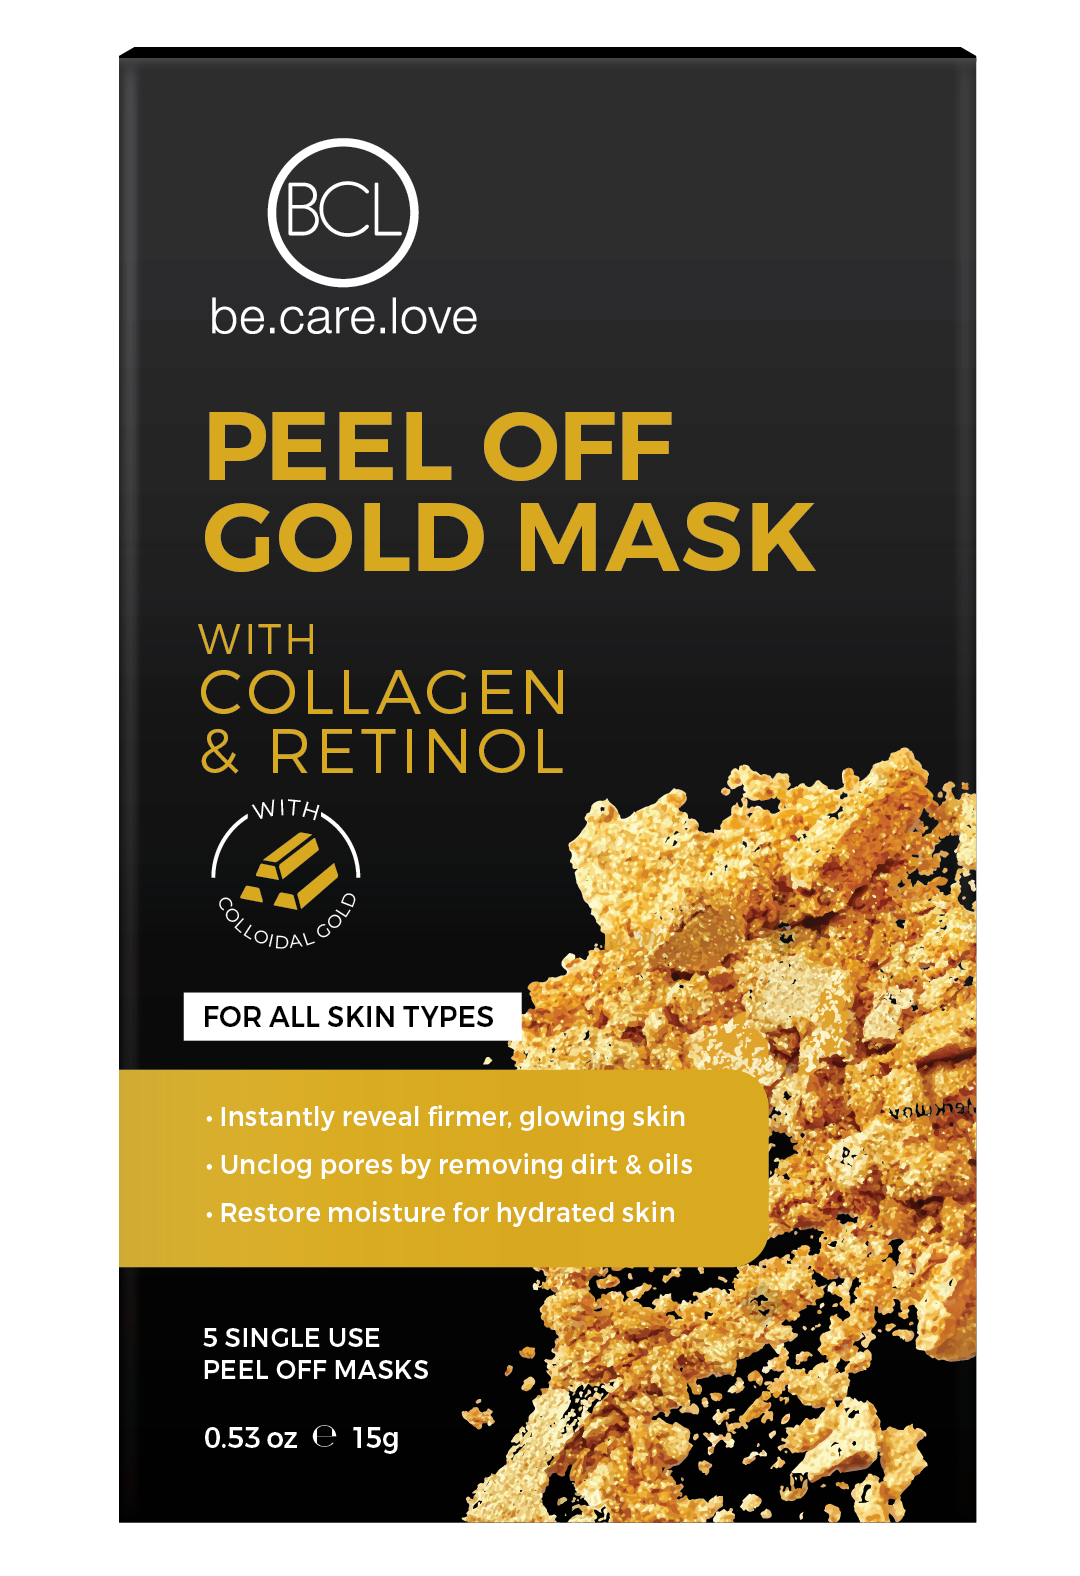 underholdning For en dagstur for meget Peel off guld maske 5 masker i en pakke | BCL Spa Danmark